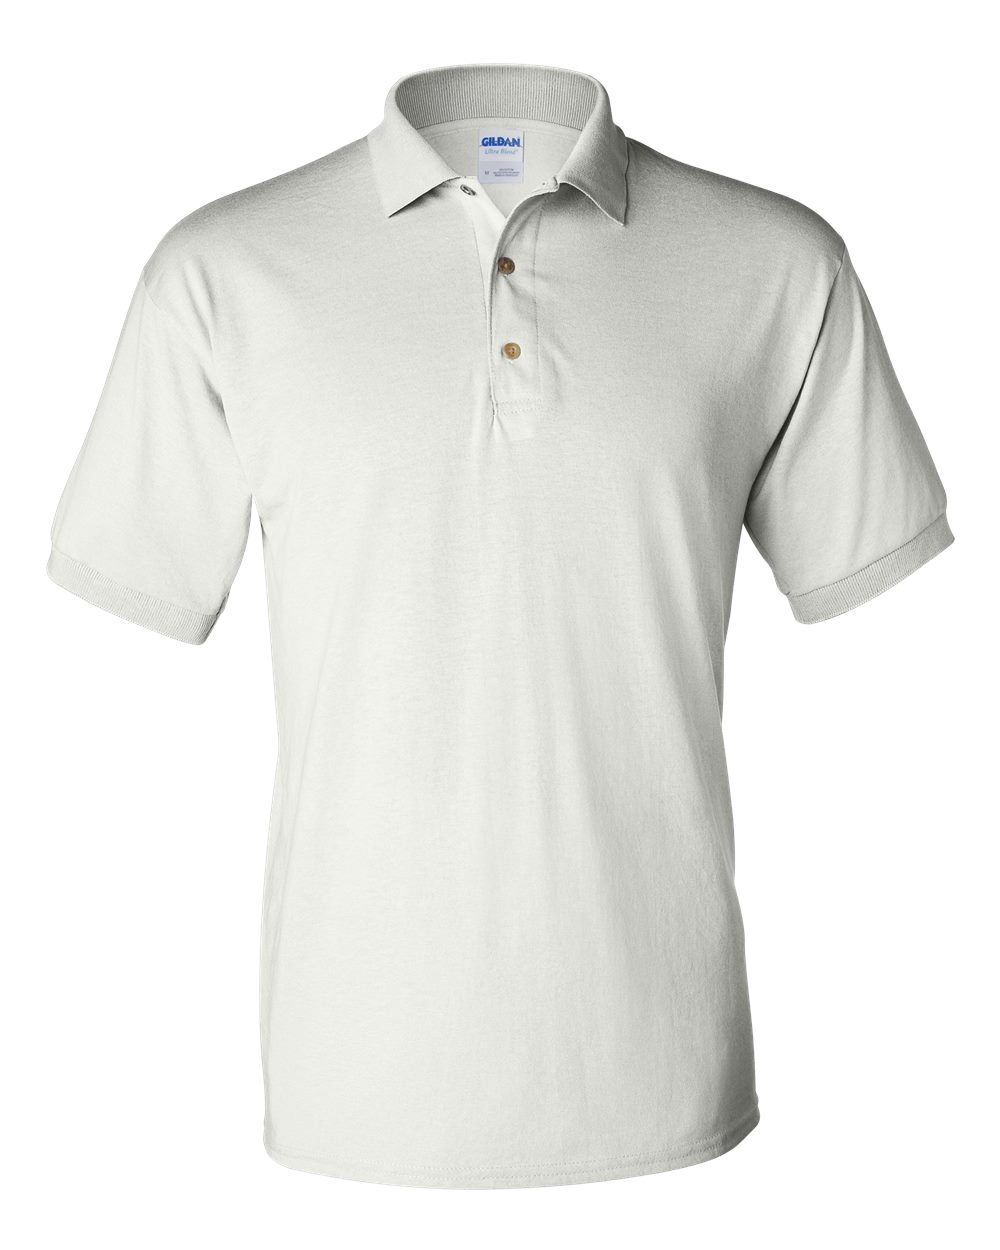 Gildan 8800 6 oz. DryBlend Jersey Knit Sport Shirt